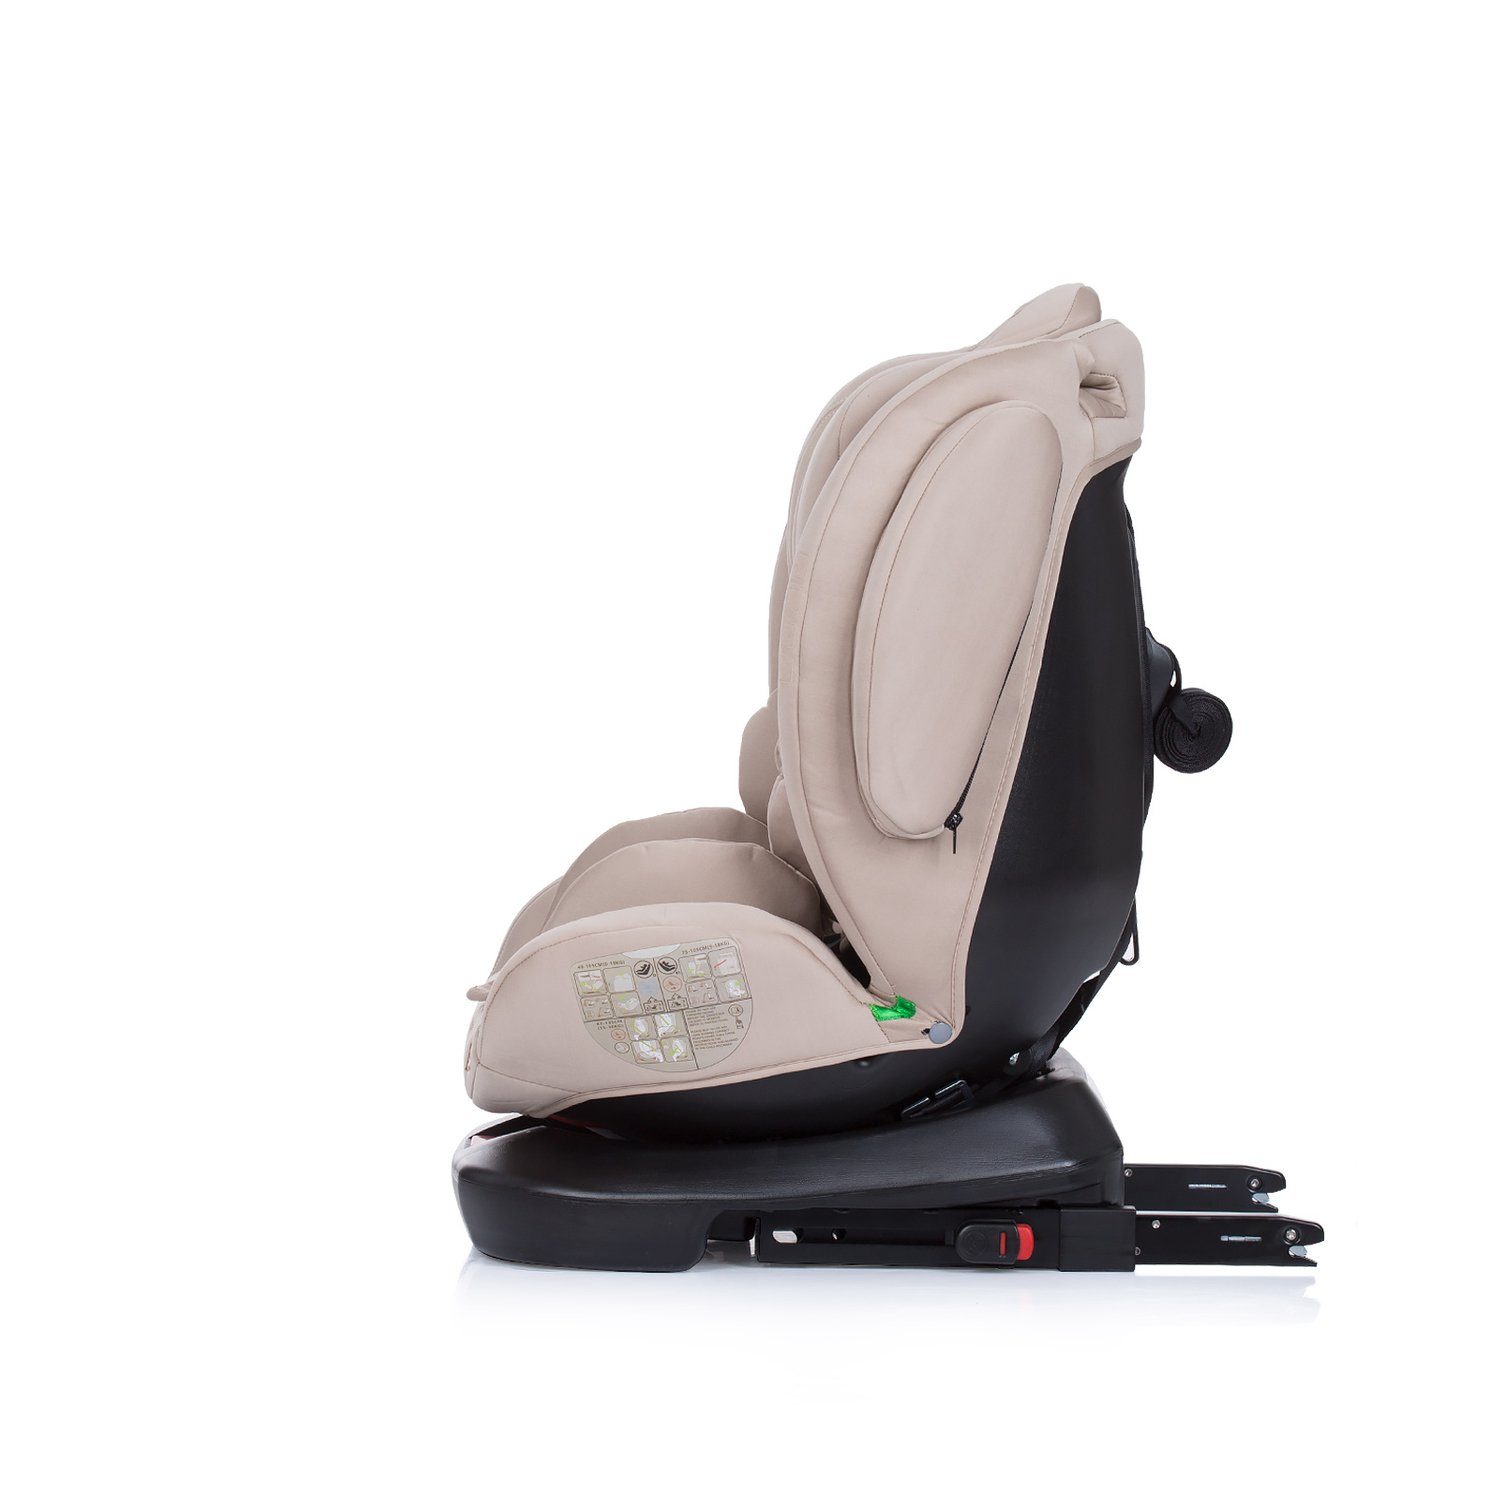 Chipolino Kopfstütze Isofix, verstellbar 150 cm) 4KID i-Size Kindersitz - 36 (40 Isofix, beige Autokindersitz kg, bis: